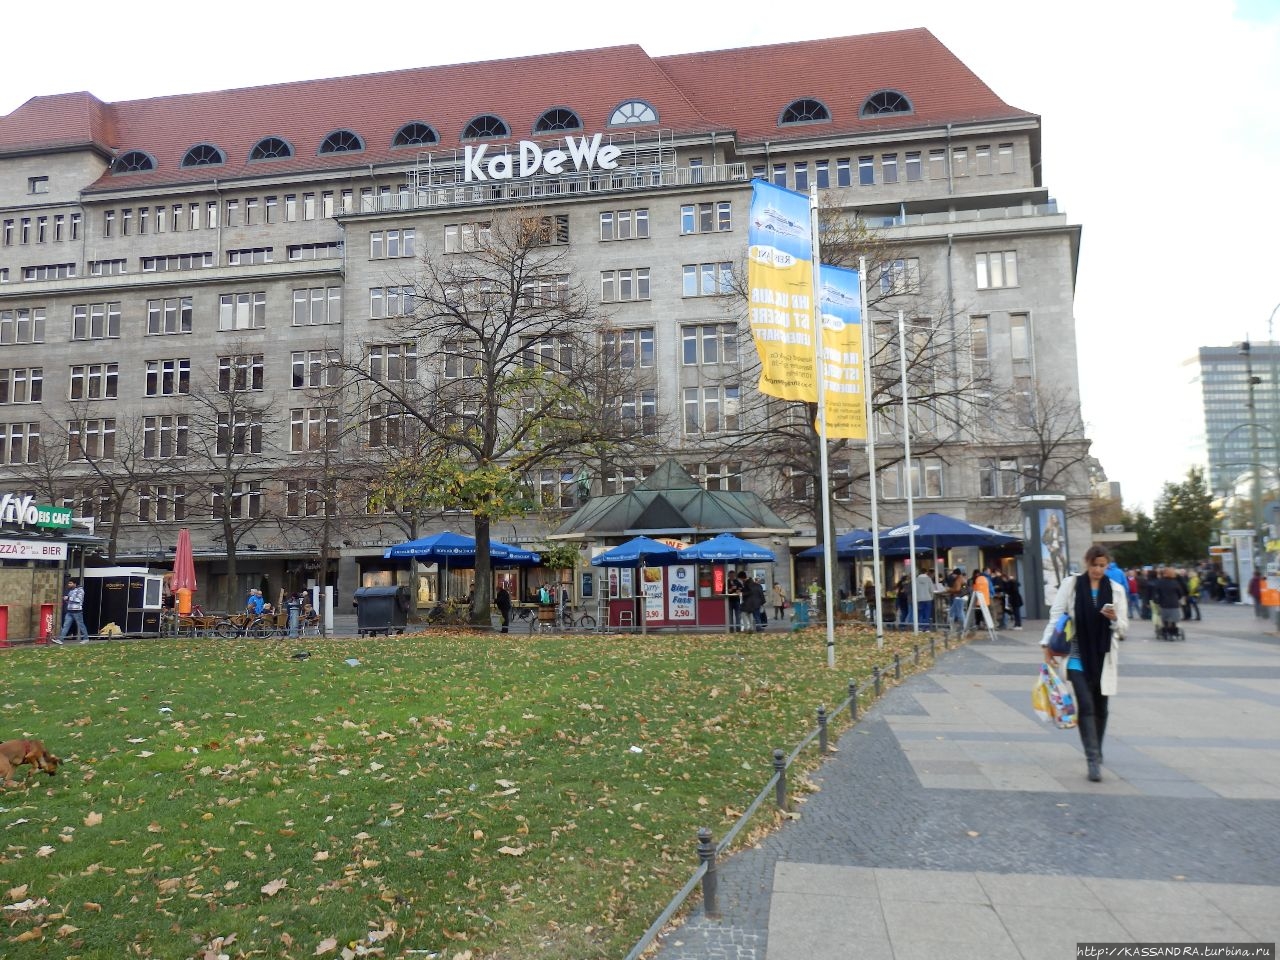 Торговый центр KaDeWe Берлин, Германия